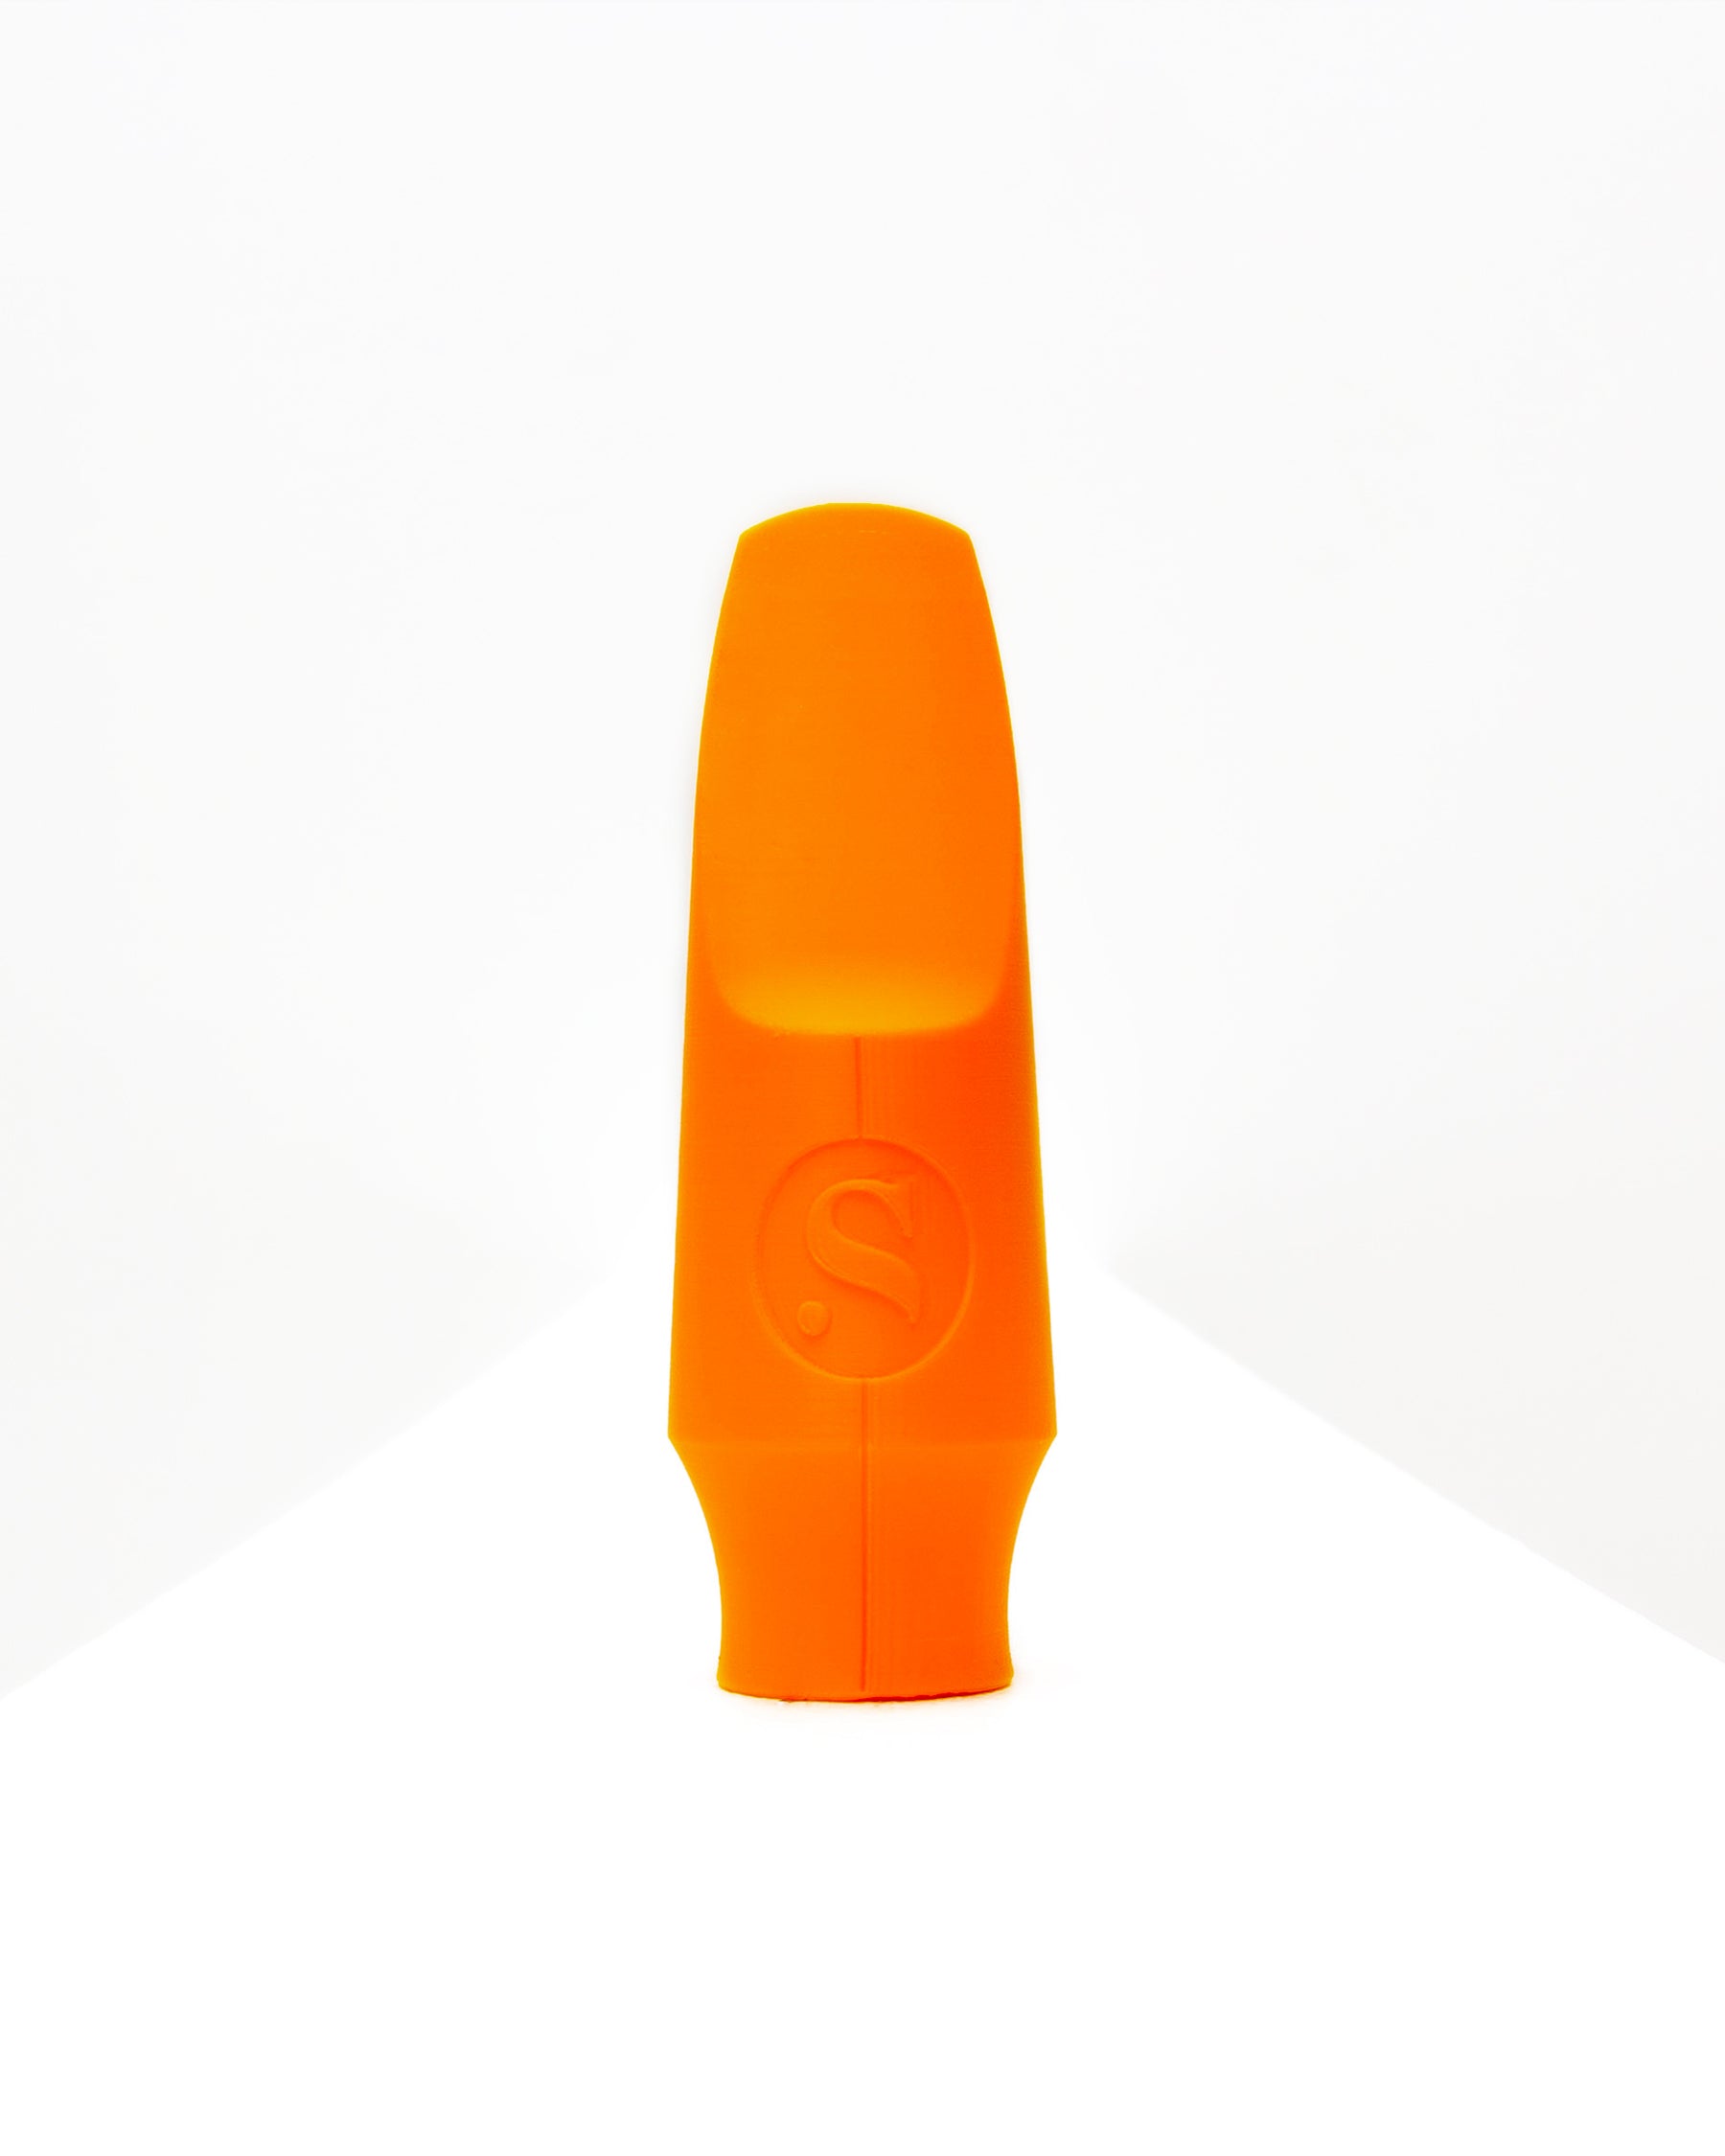 Alto Signature Saxophone mouthpiece - Mornington Lockett by Syos - 9 / Lava Orange